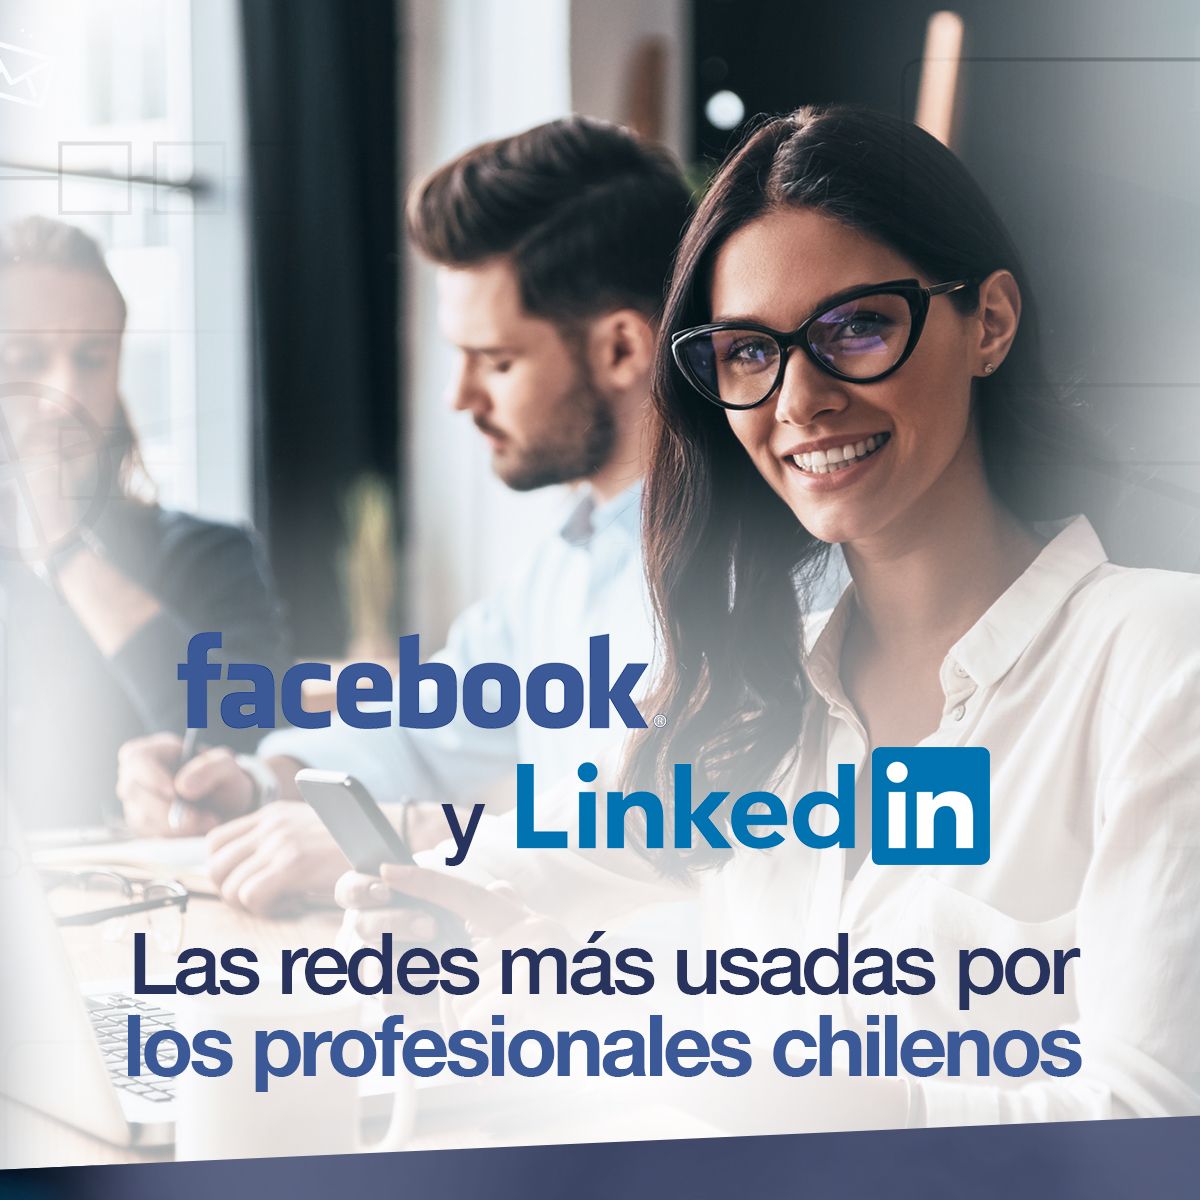 Facebook y Linkedin son las redes más usadas por los profesionales chilenos